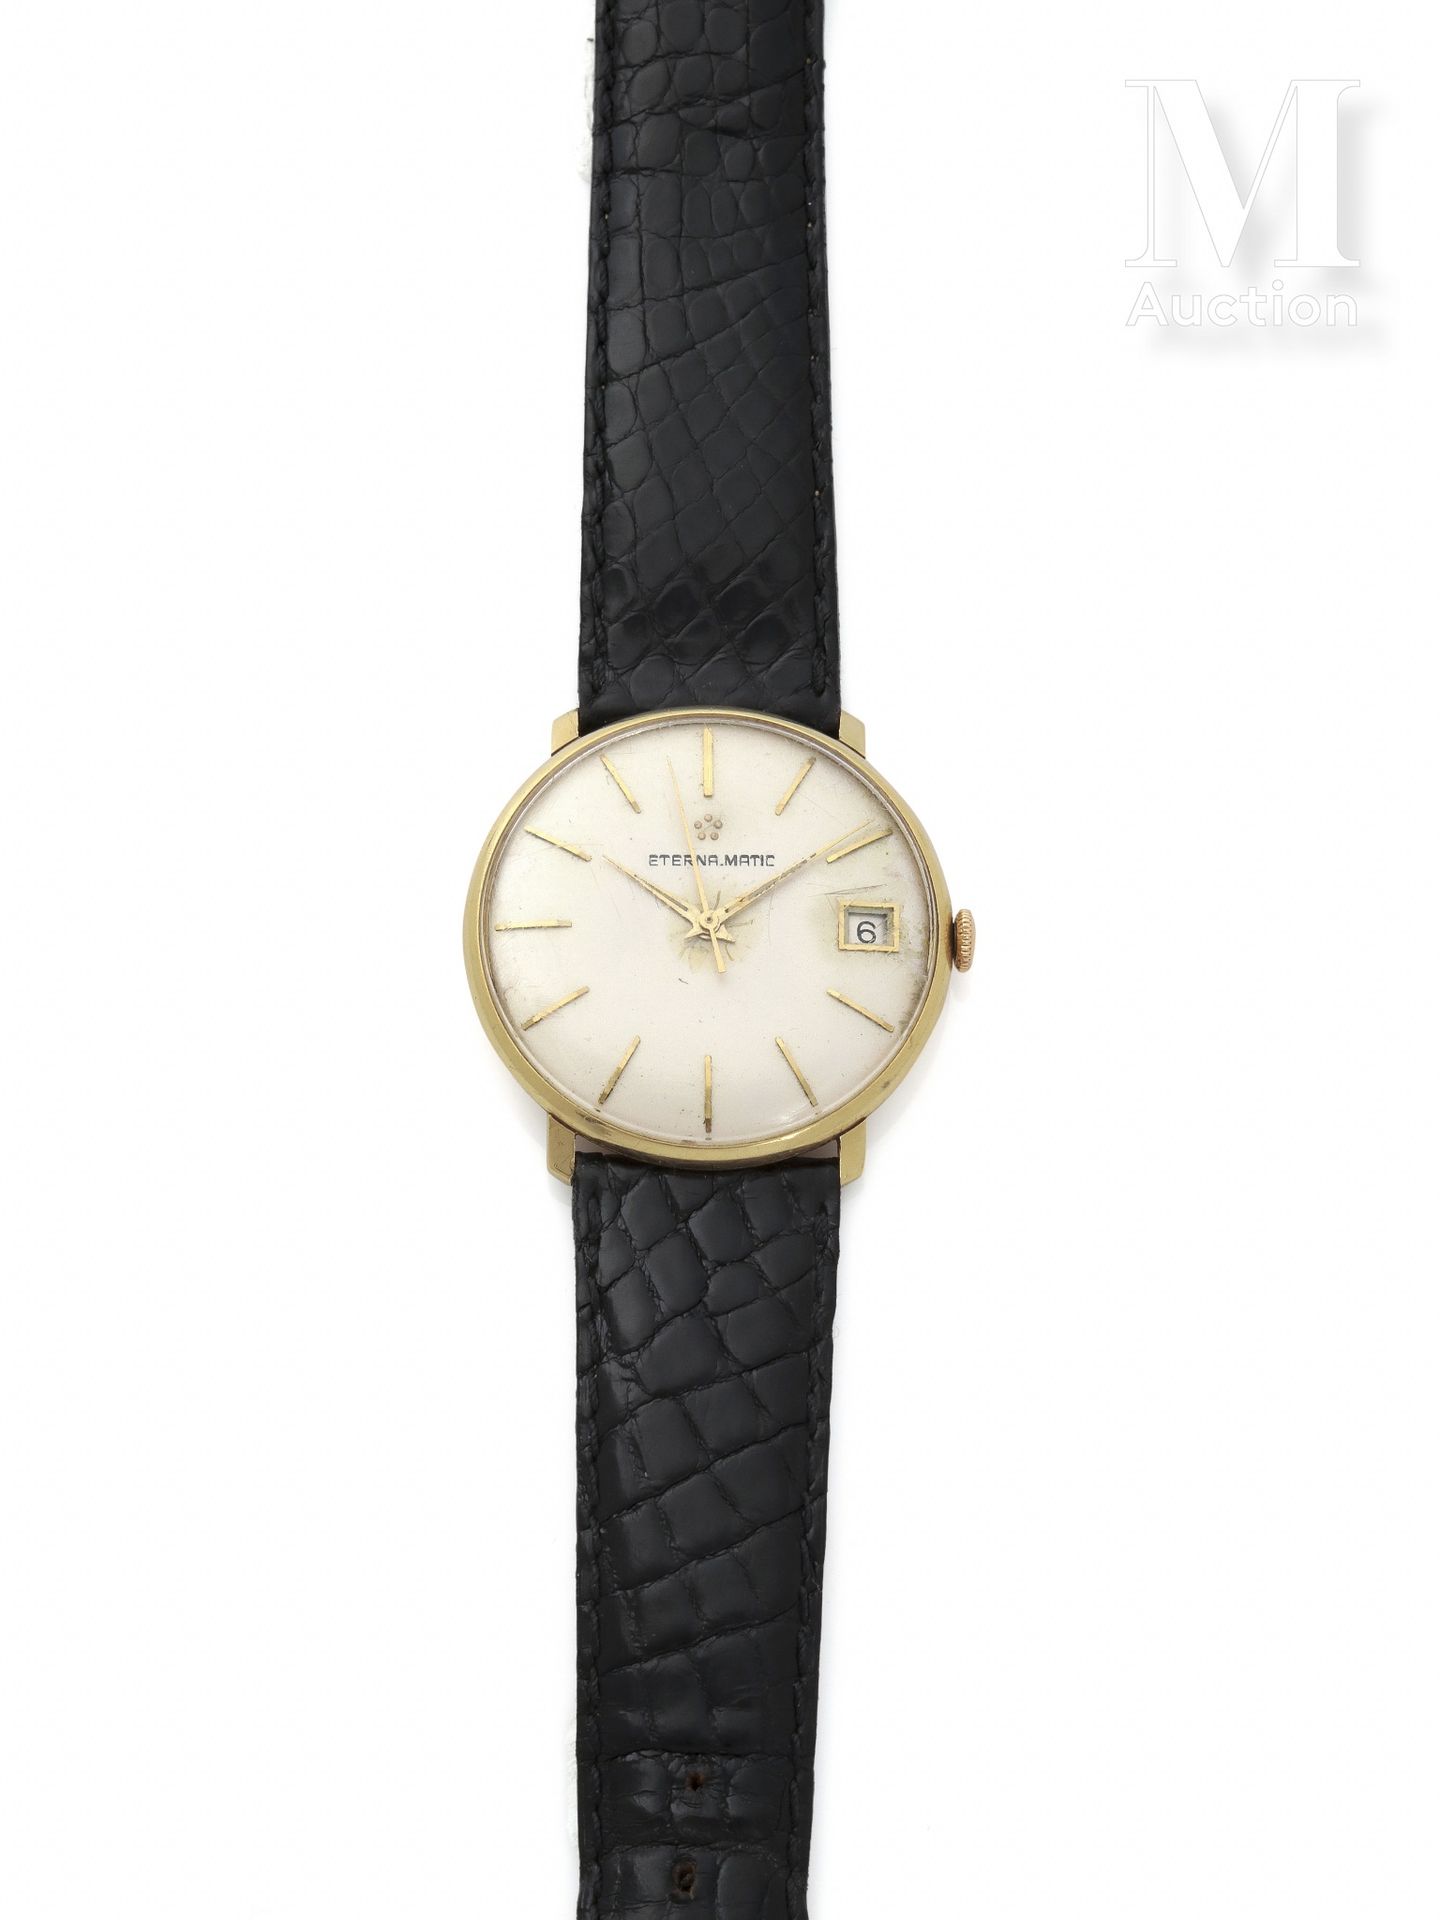 ETERNA-MATIC Alrededor de 1960

Reloj redondo de hombre en oro de 18 quilates.

&hellip;